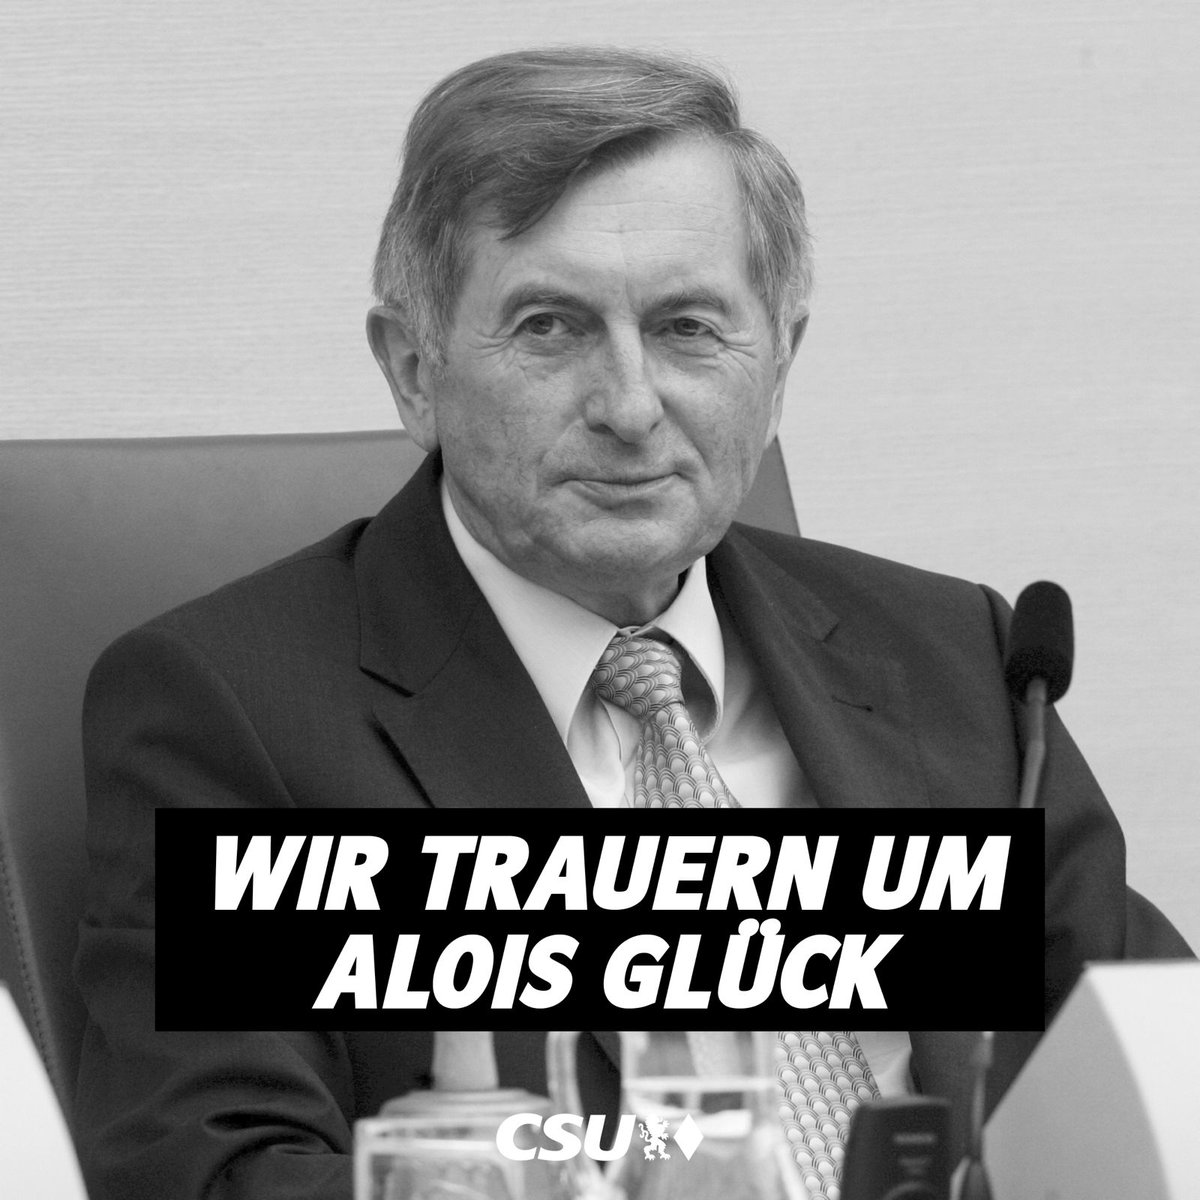 Die CSU trauert um Alois Glück. Er war 38 Jahre Mitglied des Bayerischen Landtags, 15 Jahre Vorsitzender der CSU-Landtagsfraktion und fünf Jahre Landtagspräsident. Er war außerdem Vorsitzender des CSU-Bezirksverbands Oberbayern und Staatssekretär im Bayerischen Umweltministerium.…